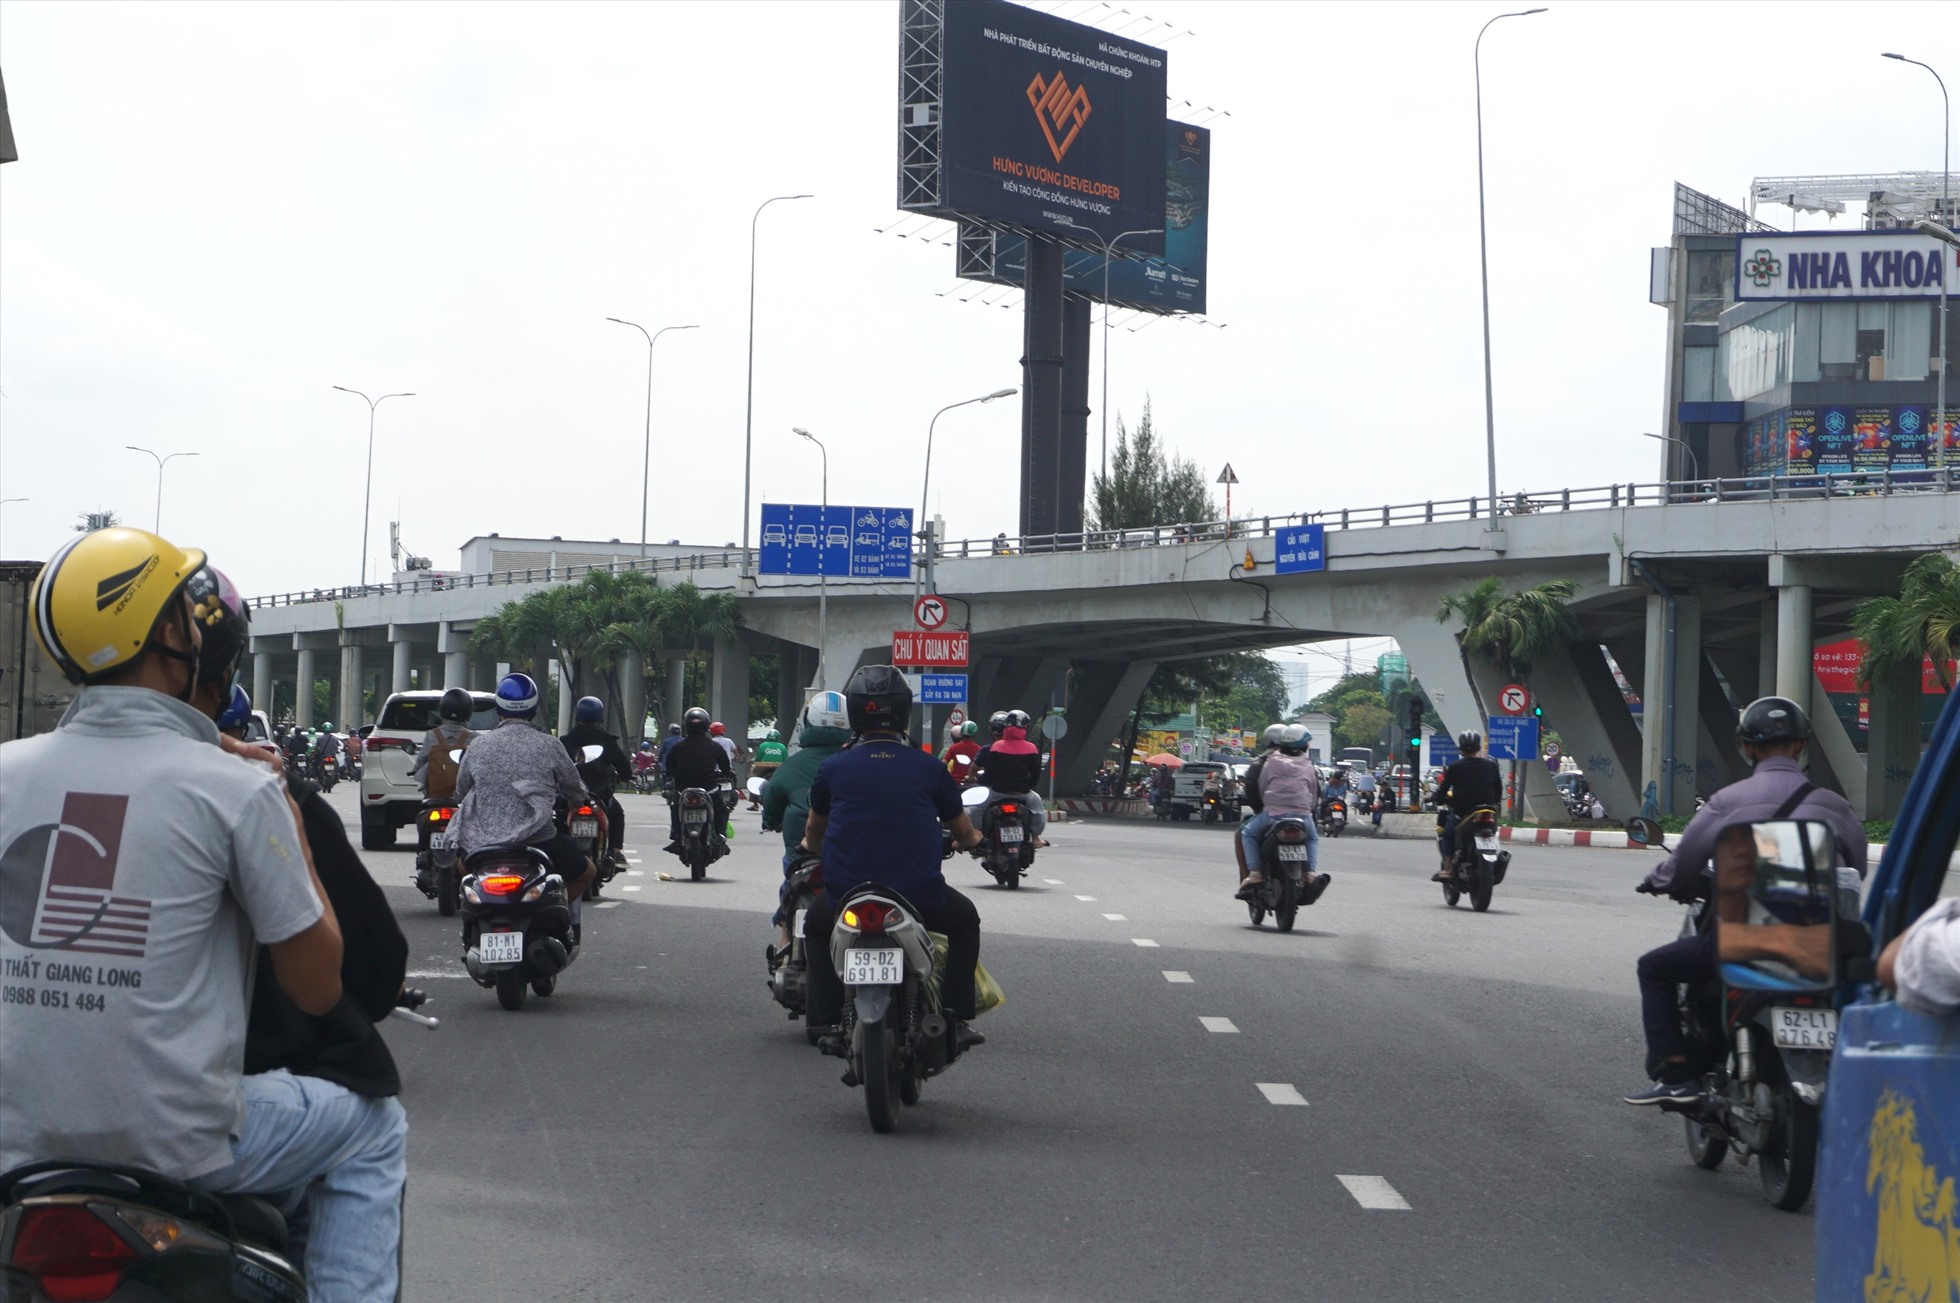 Cầu vượt Nguyễn Hữu Cảnh dài 343 m, bề rộng 12,7 m với 3 làn xe được thông xe năm 2002 cho xe chạy một chiều từ chân cầu Sài Gòn sang đường Nguyễn Hữu Cảnh đi vào trung tâm TPHCM.